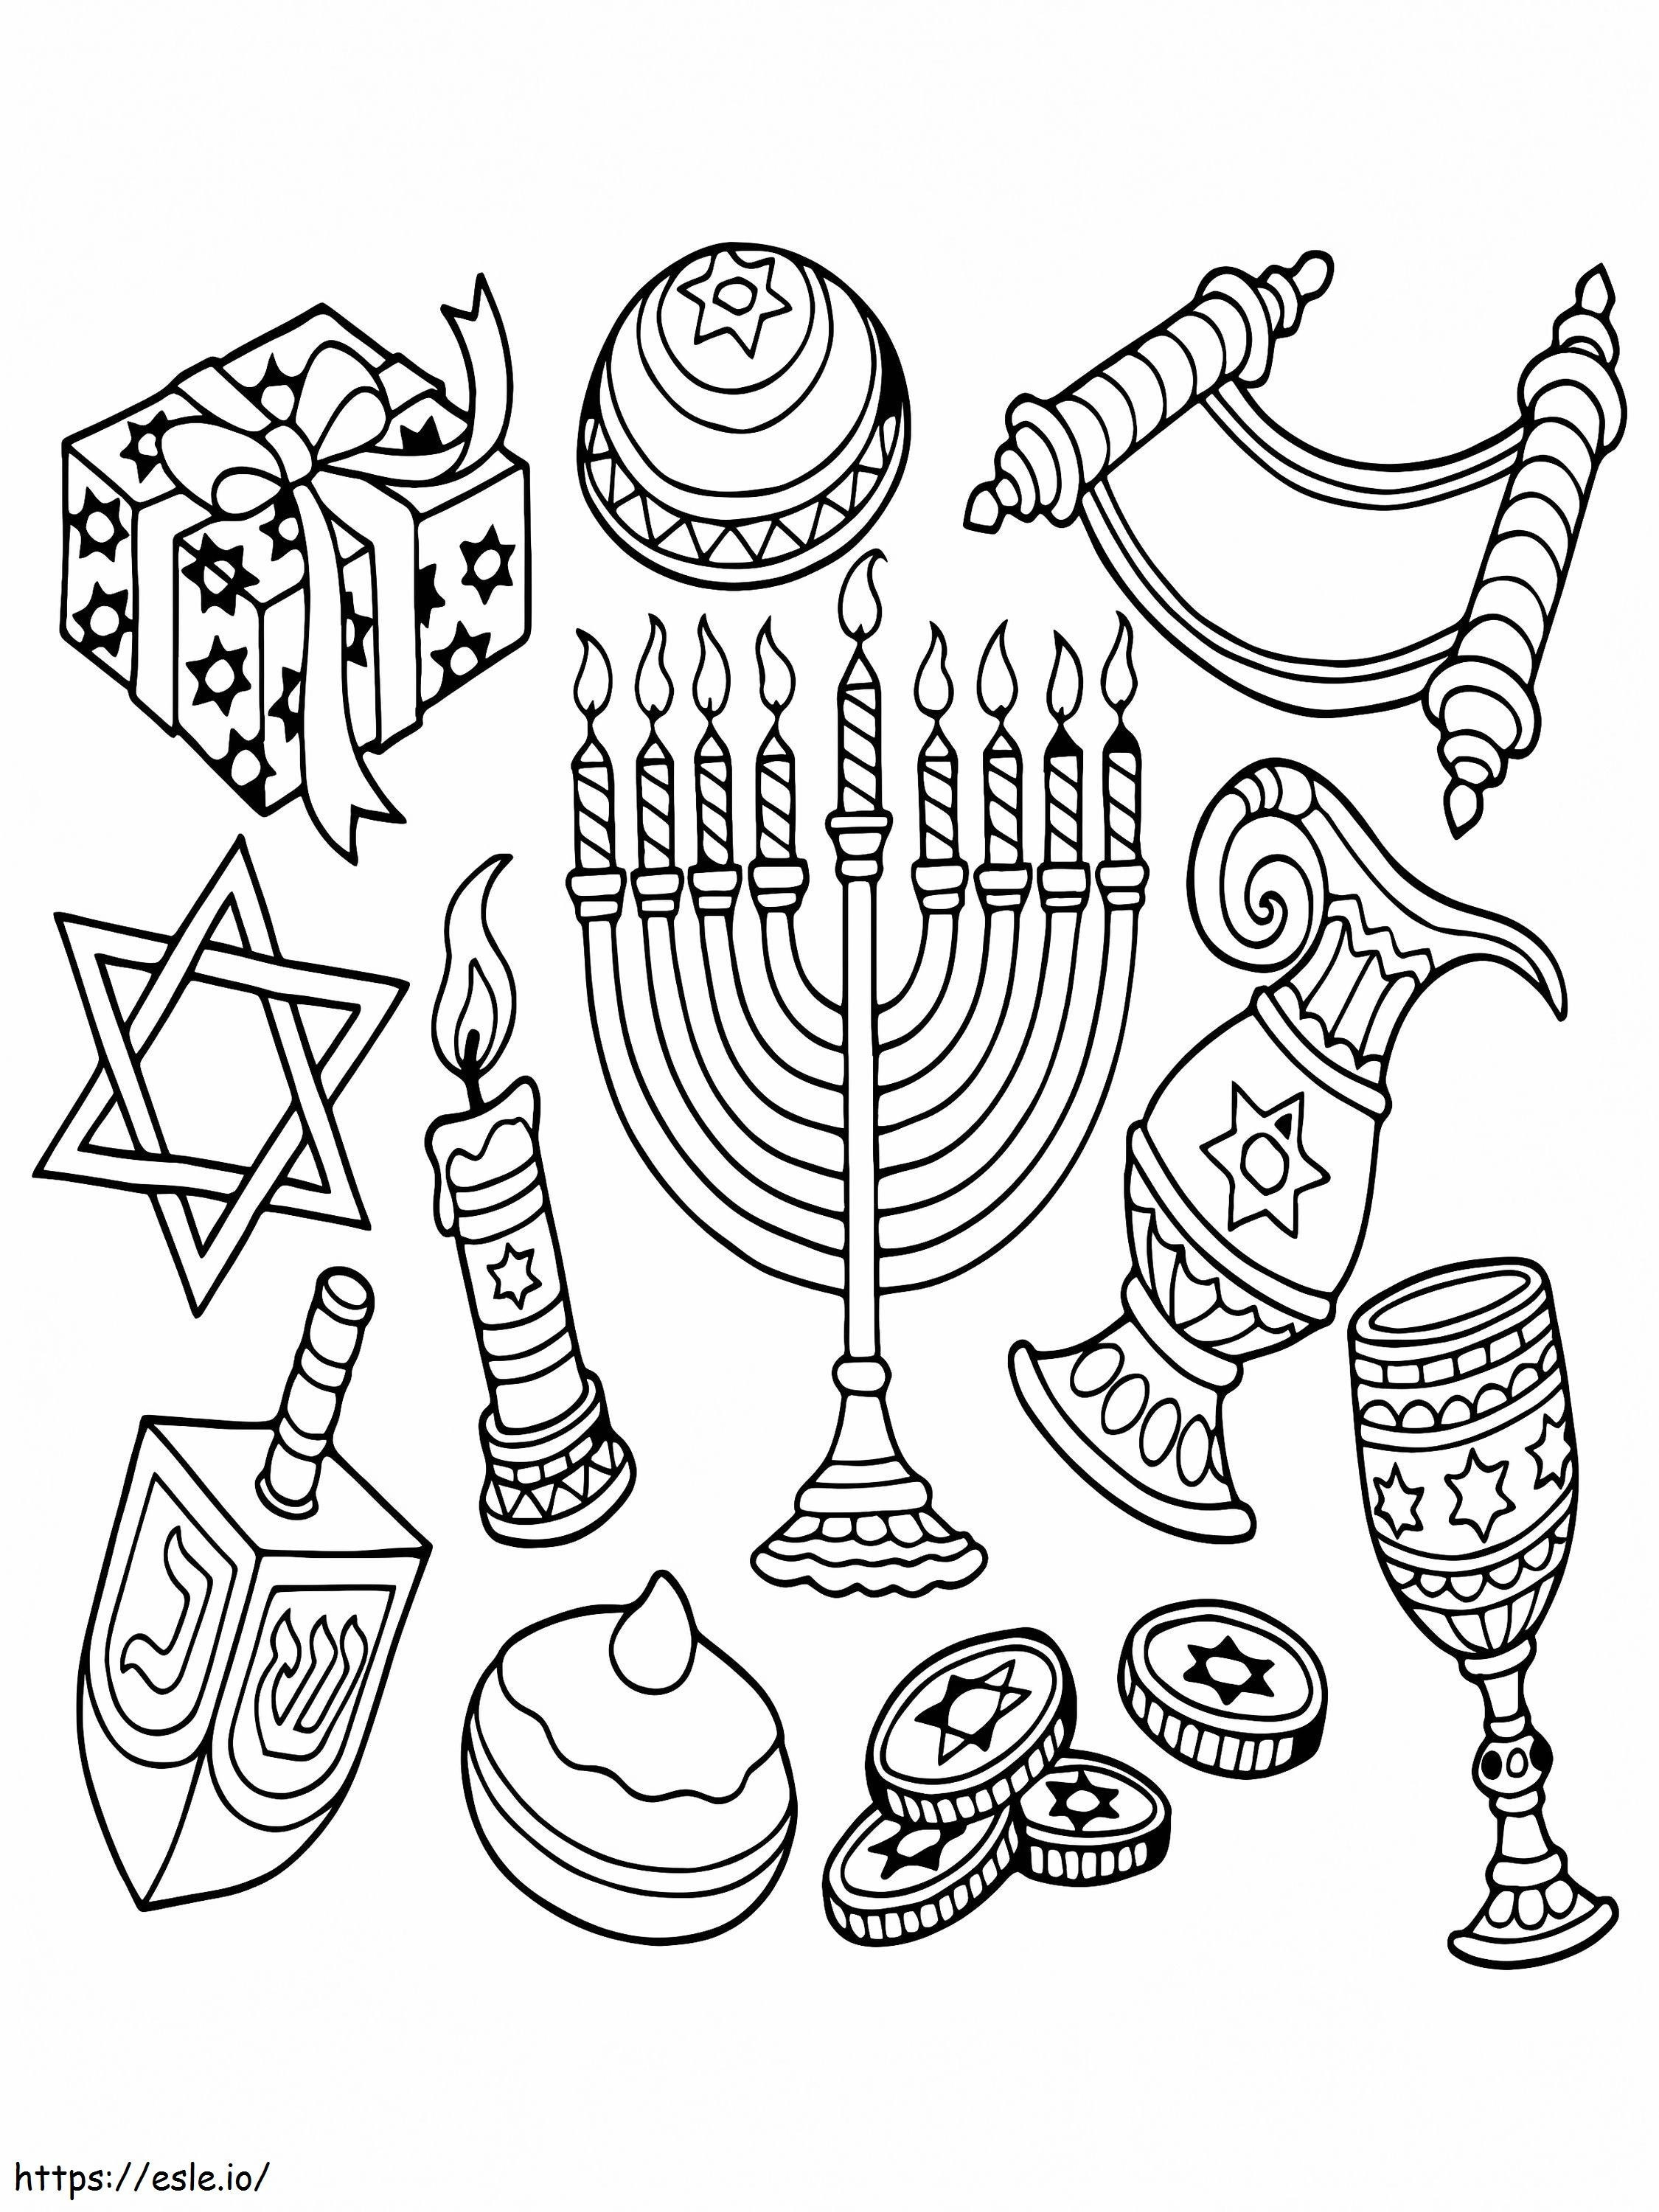 Hanukkah Symbols coloring page